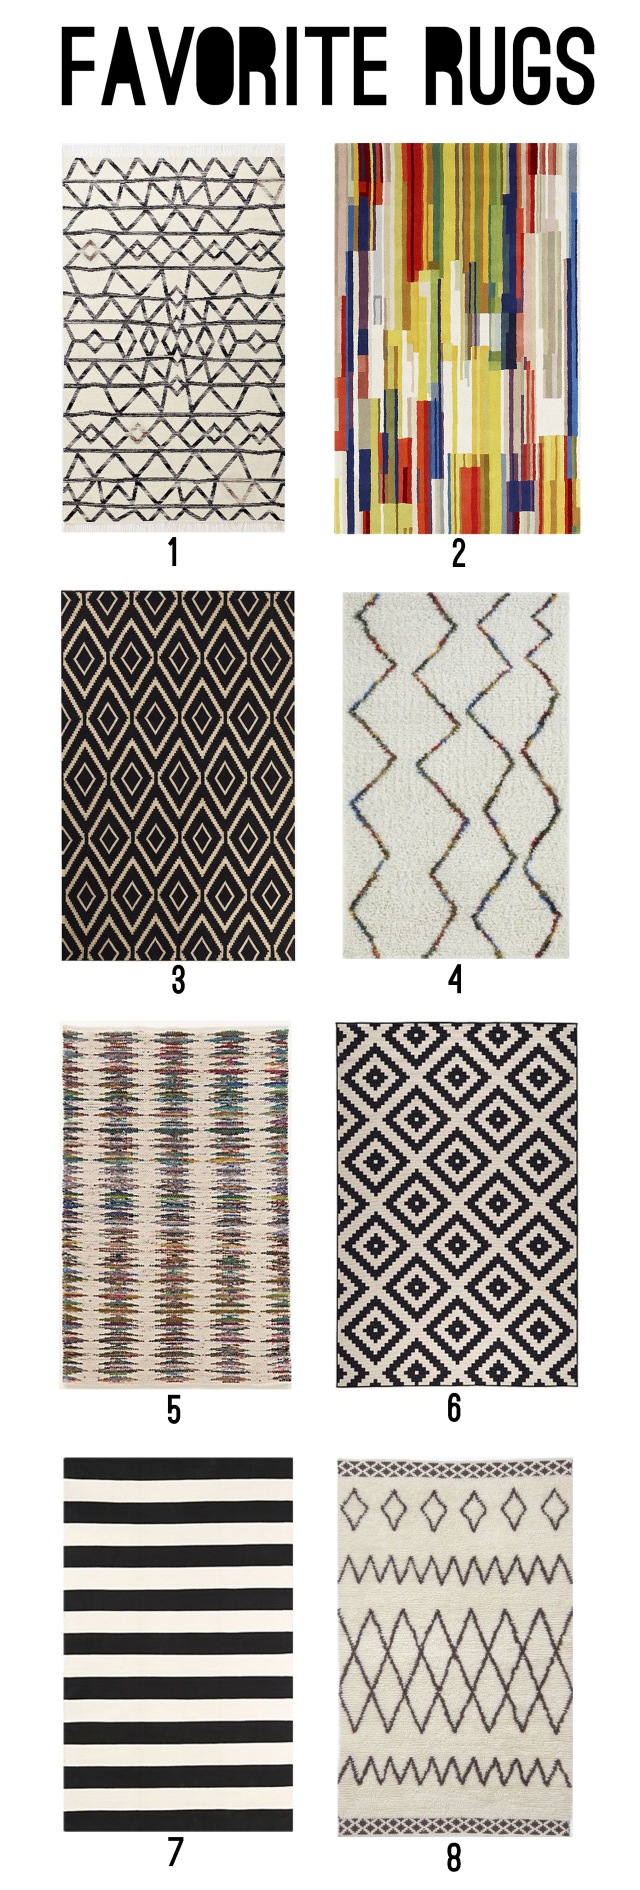 favorite rugs